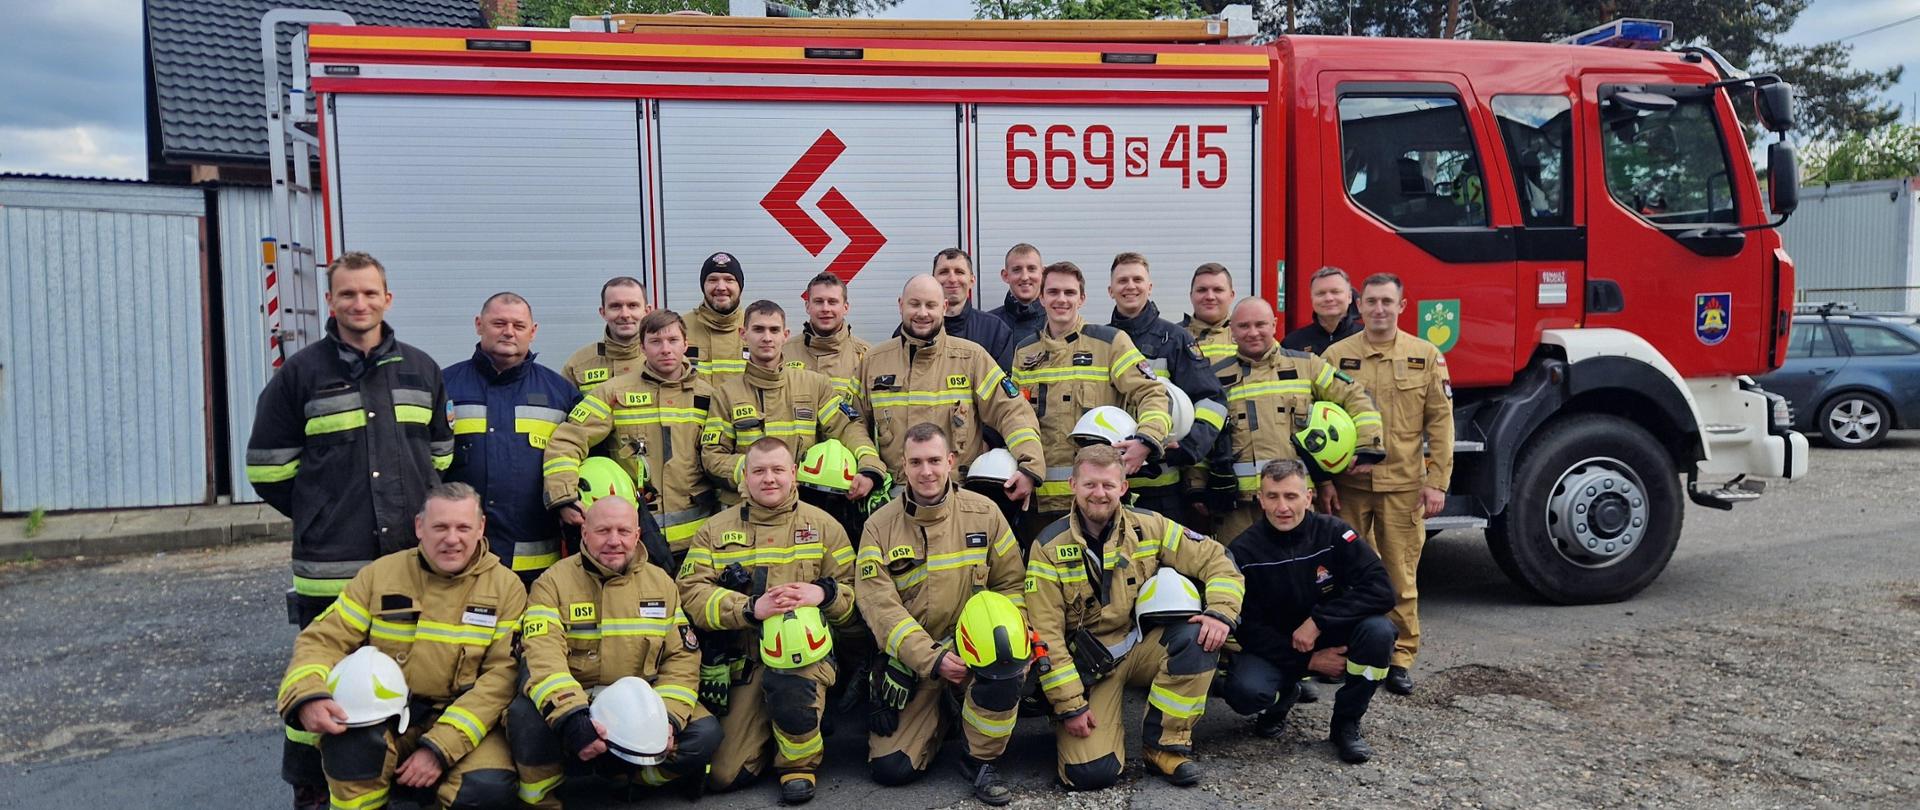 Grupowe zdjęcie strażaków uczestniczących w szkoleniu kierowców konserwatorów sprzętu ratowniczego OSP. W tle wóz strażacki.